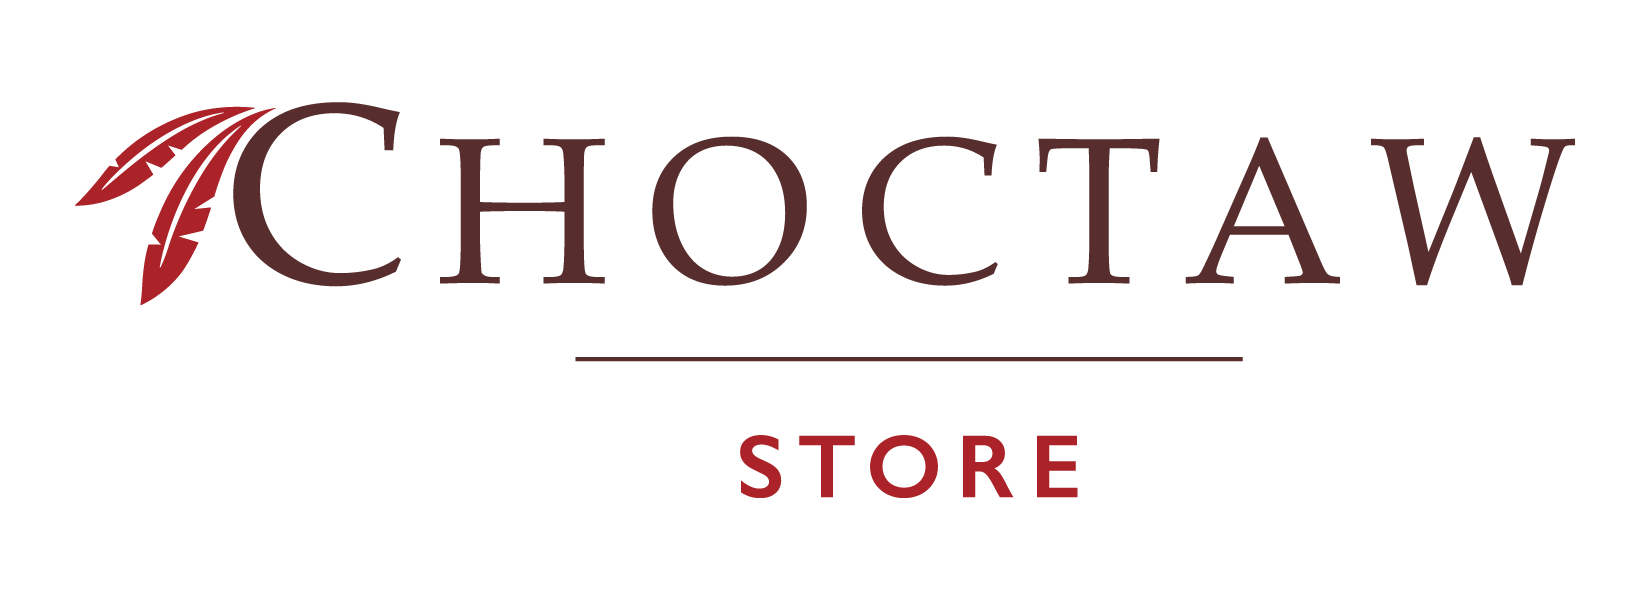 Choctaw Logo - The Choctaw Store - The Choctaw Store